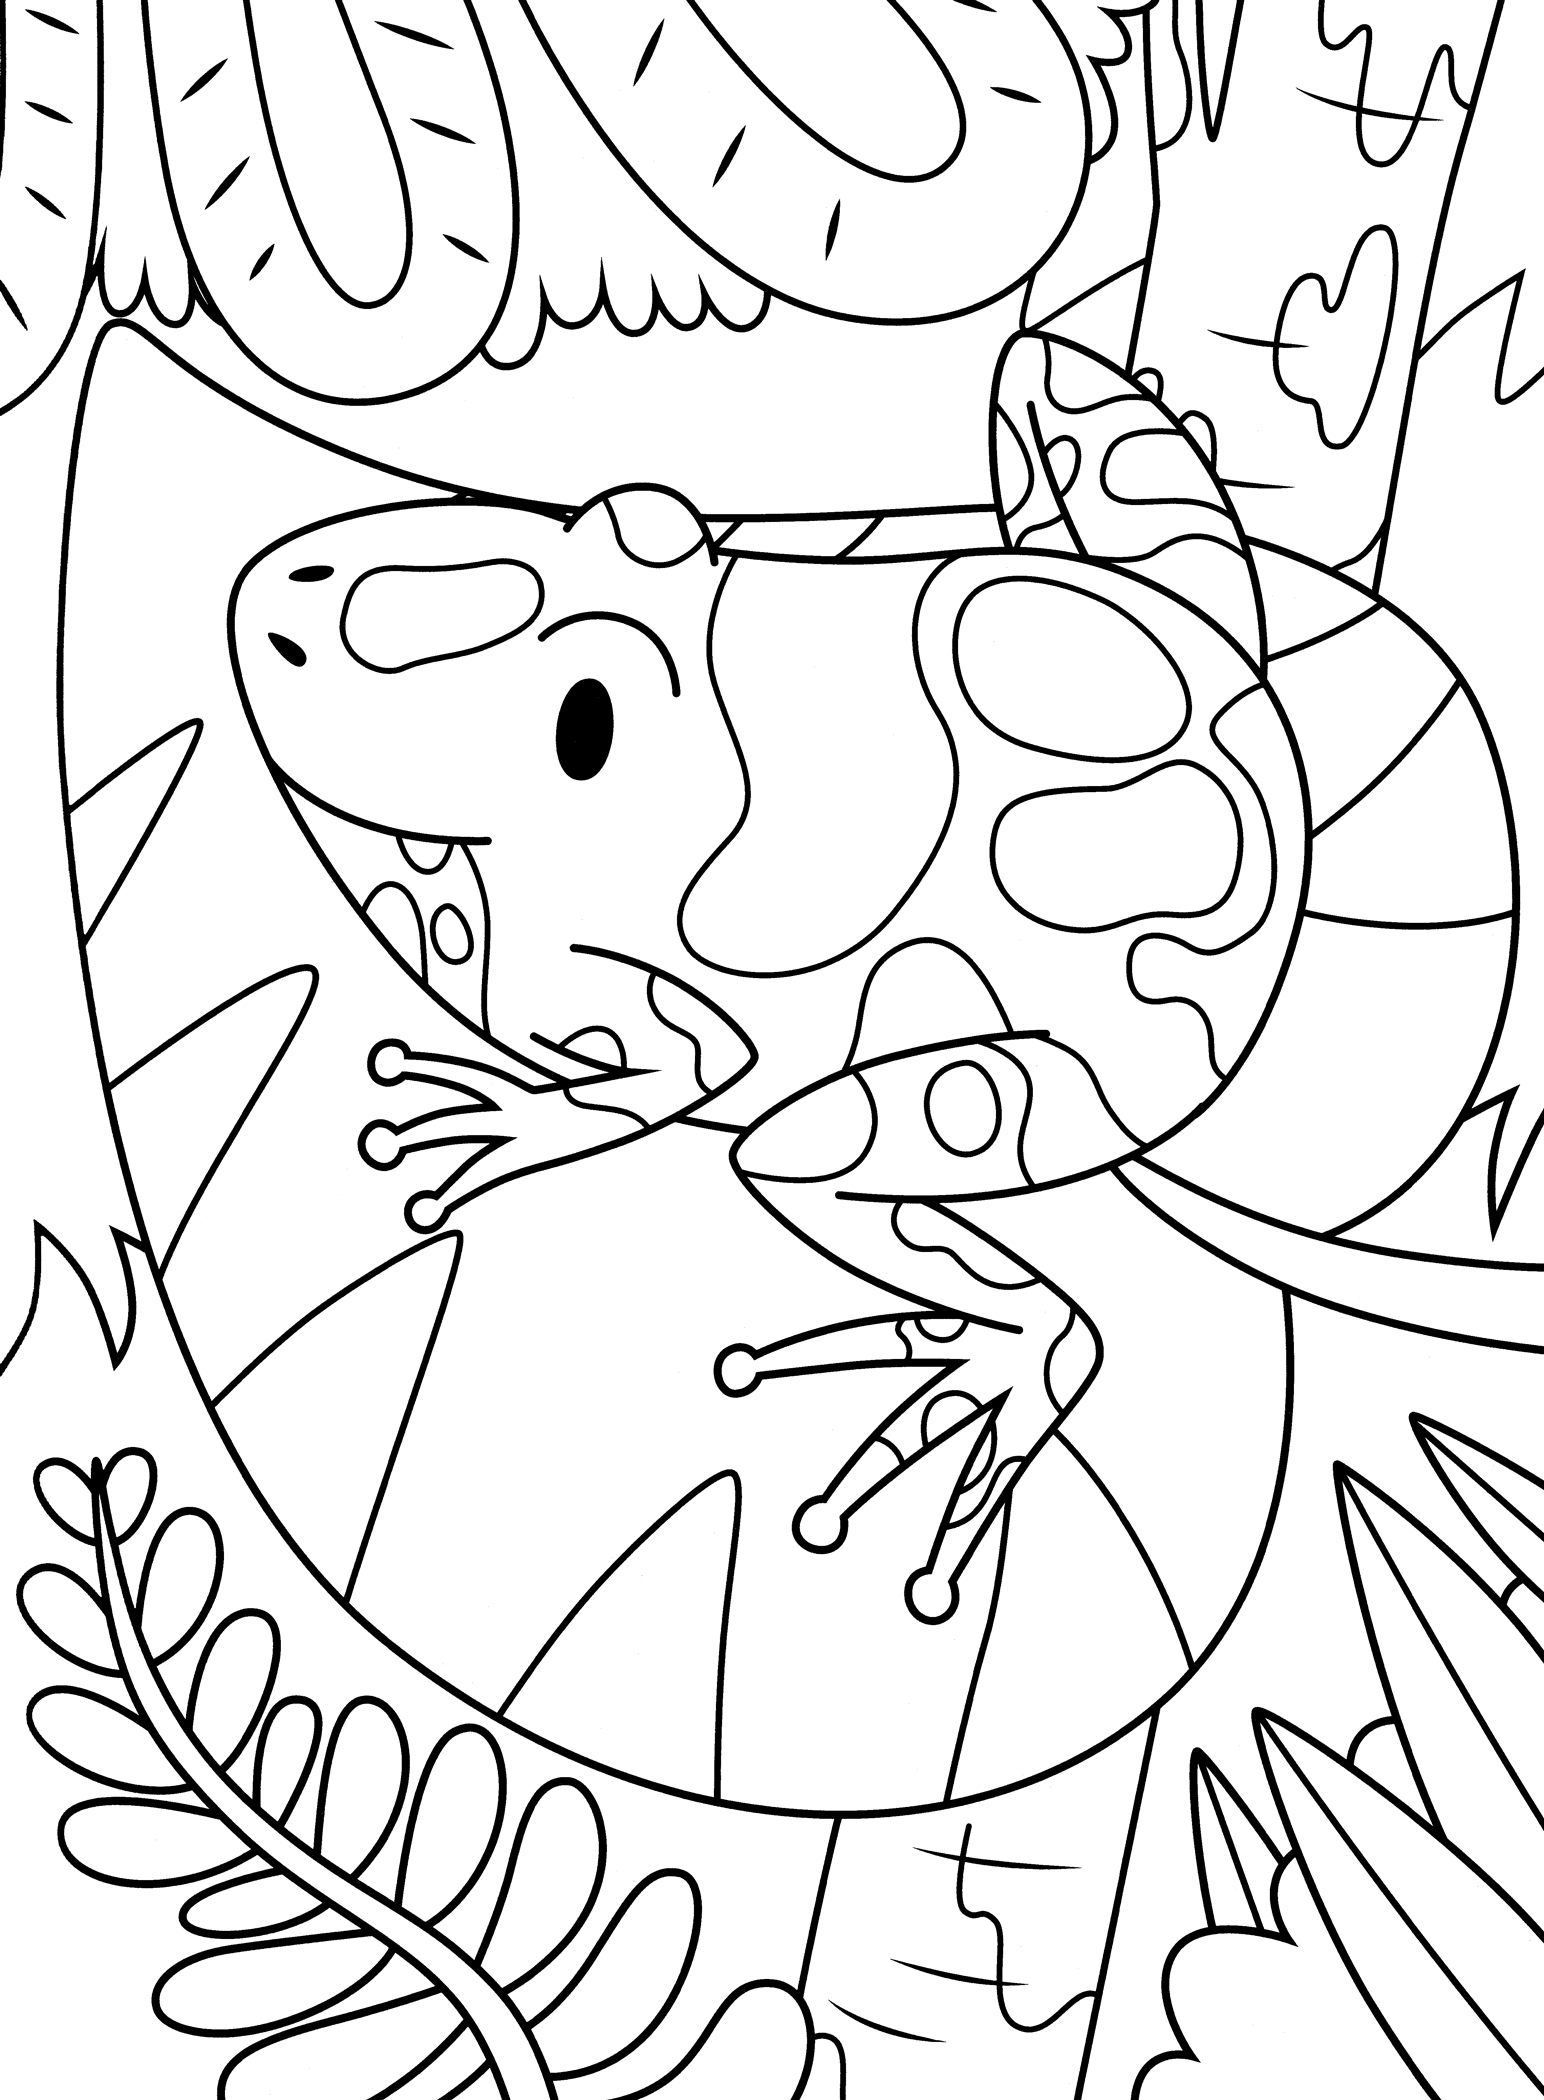 Раскраска Пятнистая лягушка на листике